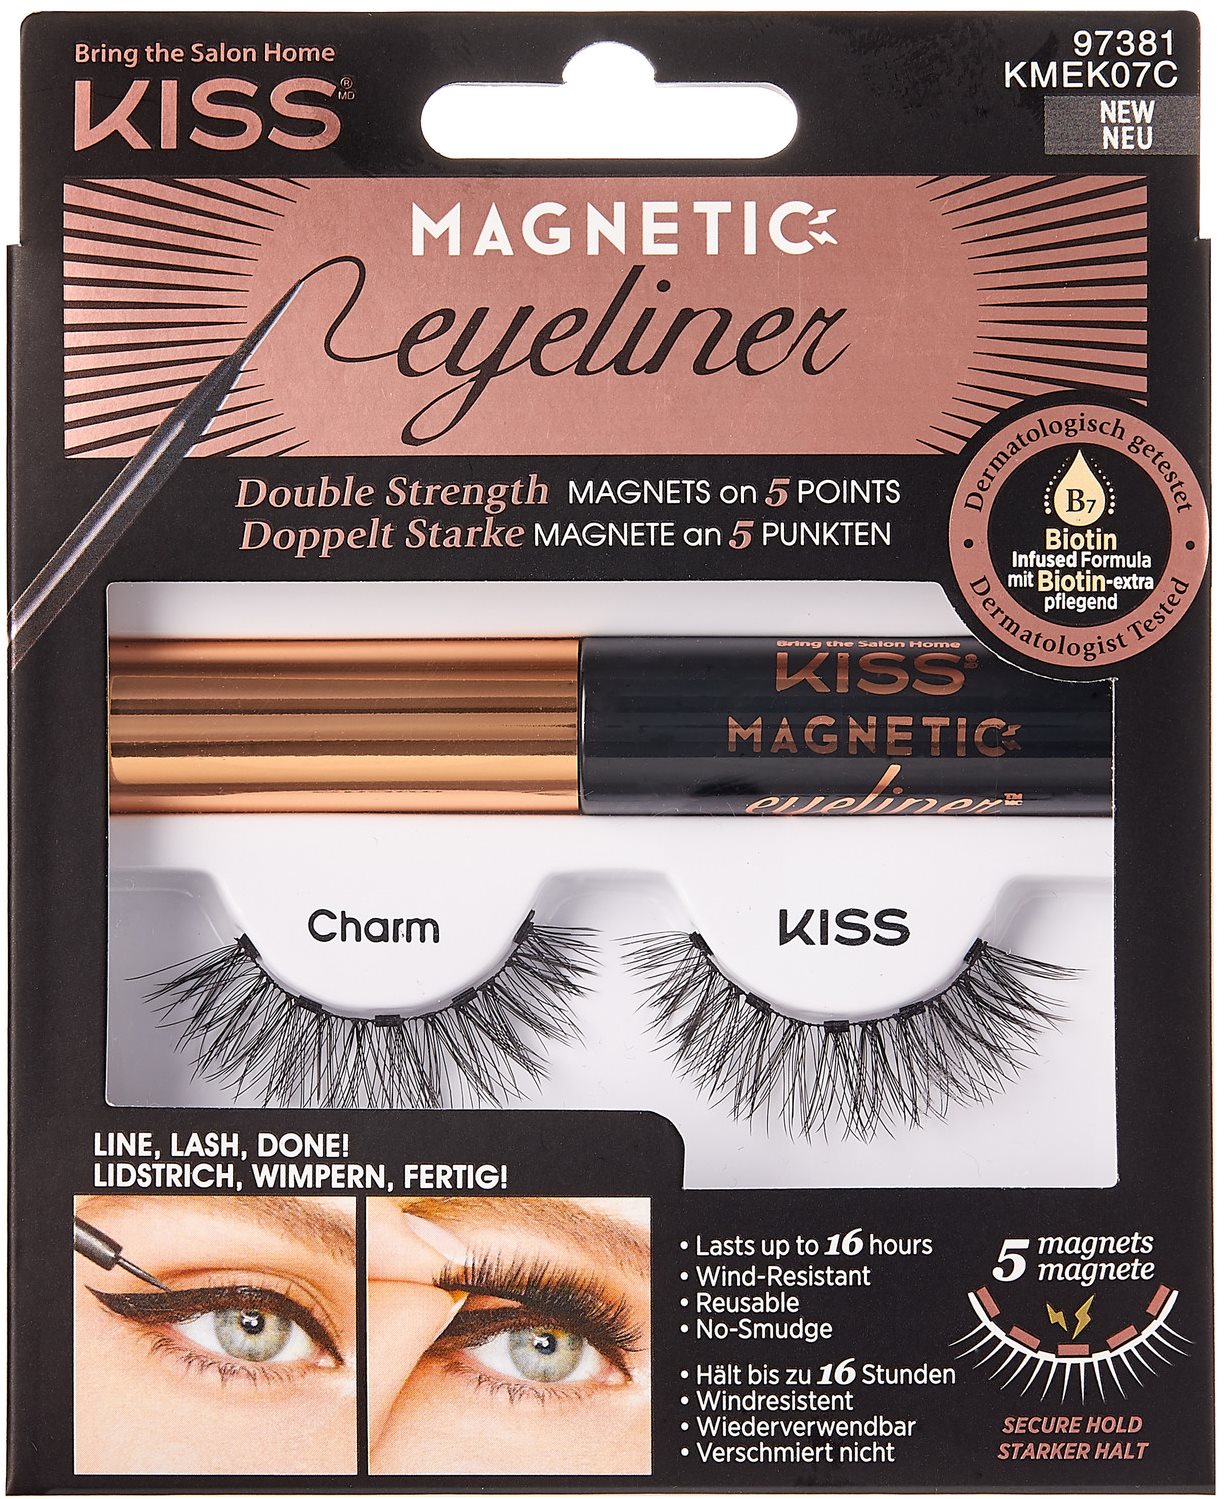 Ragasztható műszempilla KISS Magnetic Eyeliner Kit - 07